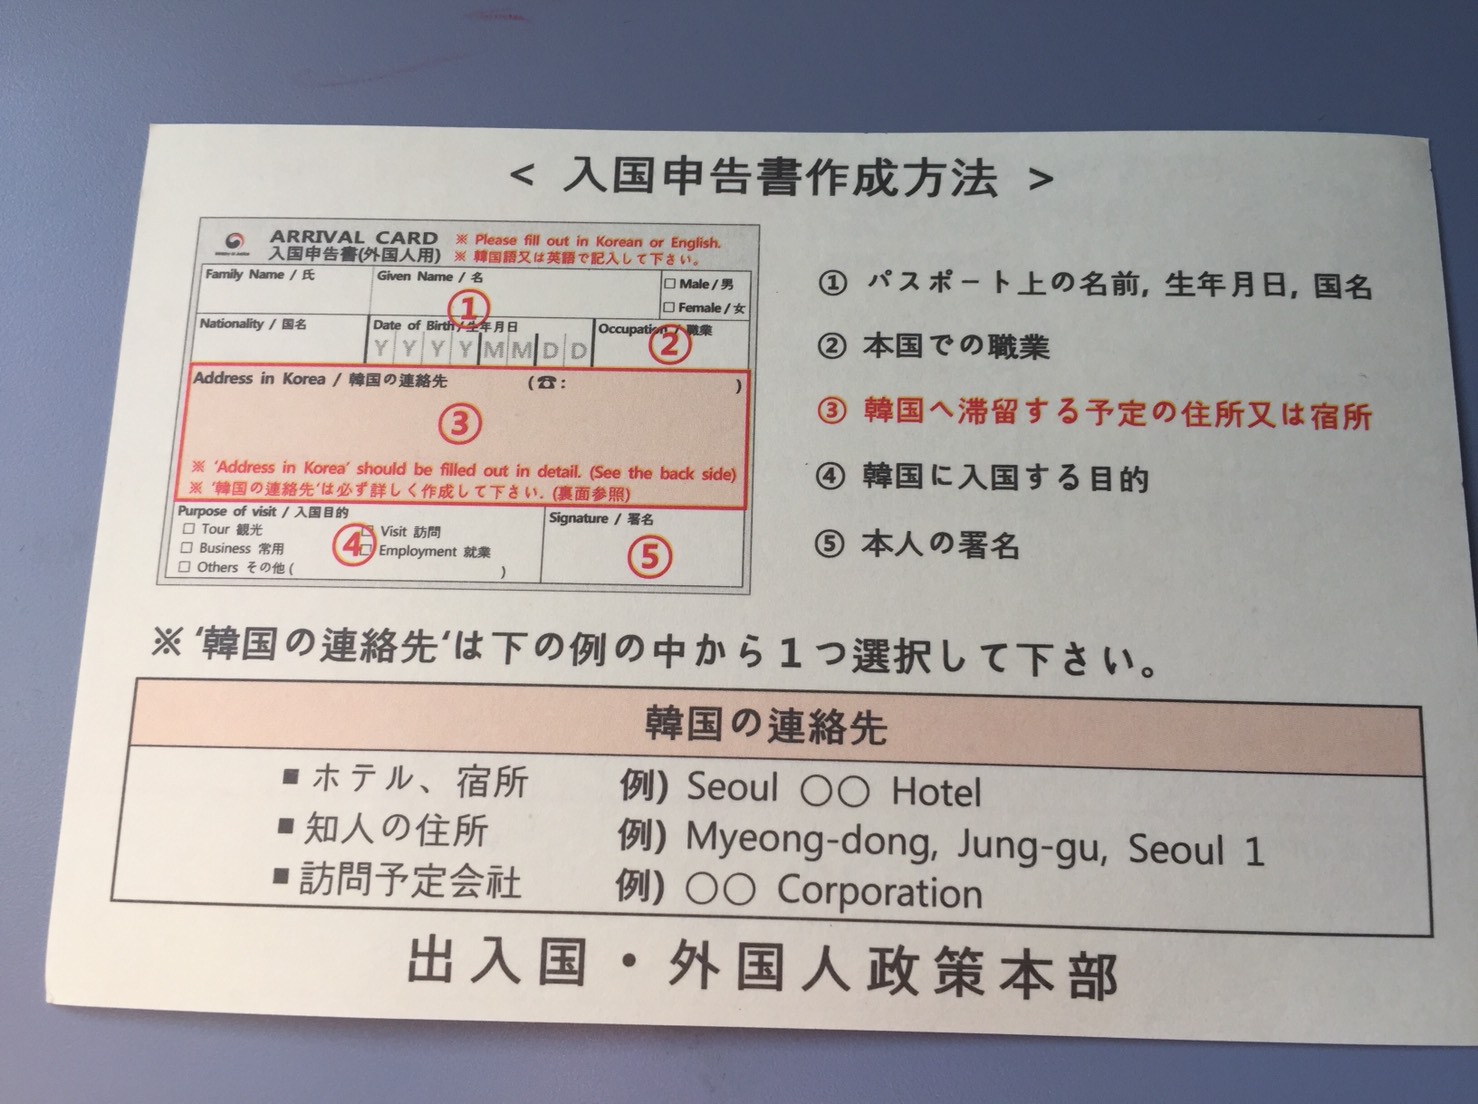 韓国への入国審査カード 入国申告書 が 簡単になりました ロミコリ 韓国でヲタ活とかしませんか